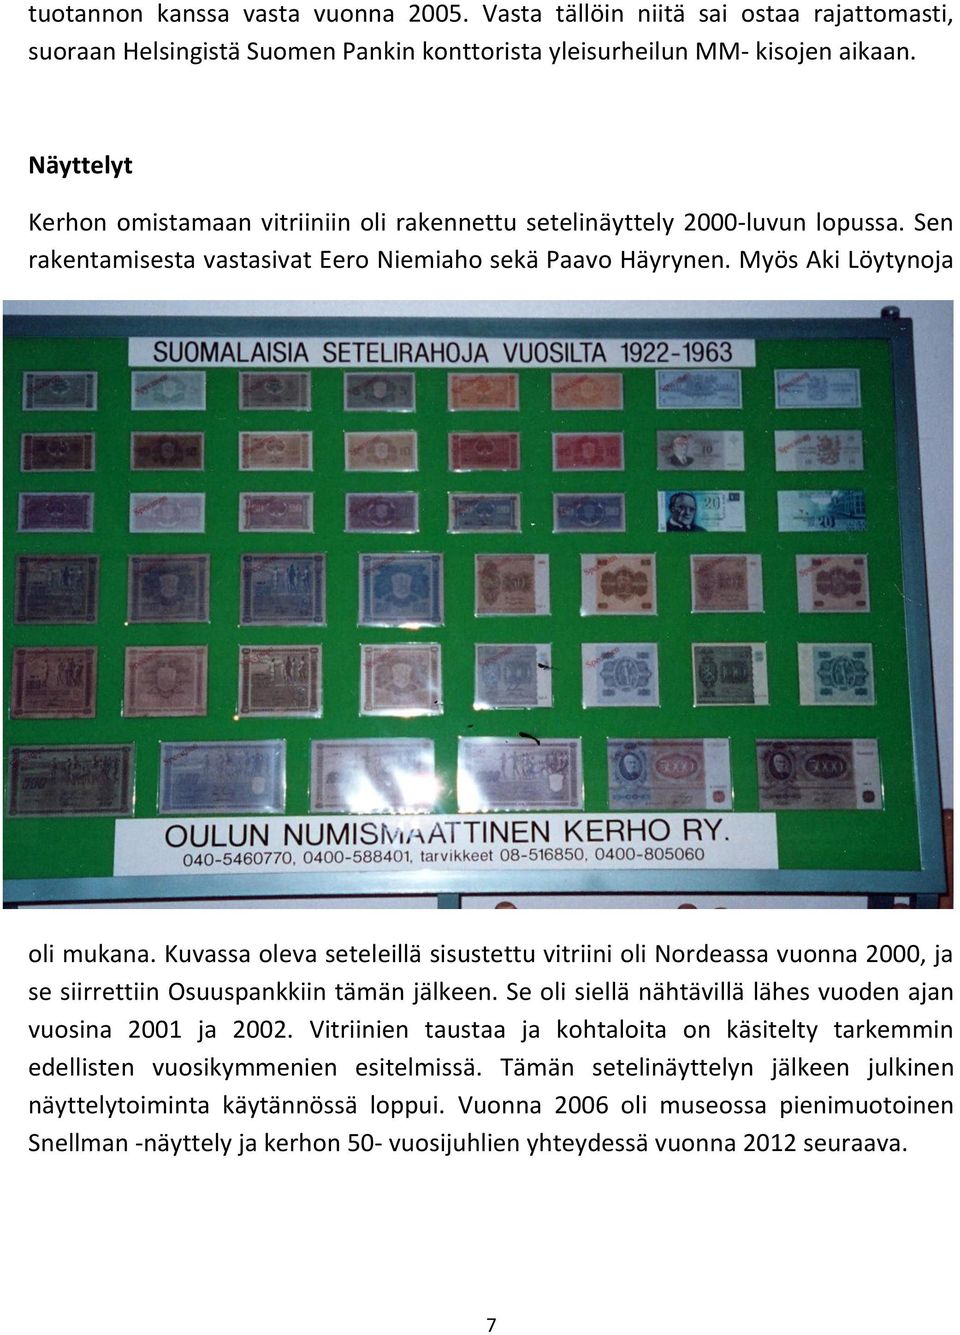 Kuvassa oleva seteleillä sisustettu vitriini oli Nordeassa vuonna 2000, ja se siirrettiin Osuuspankkiin tämän jälkeen. Se oli siellä nähtävillä lähes vuoden ajan vuosina 2001 ja 2002.